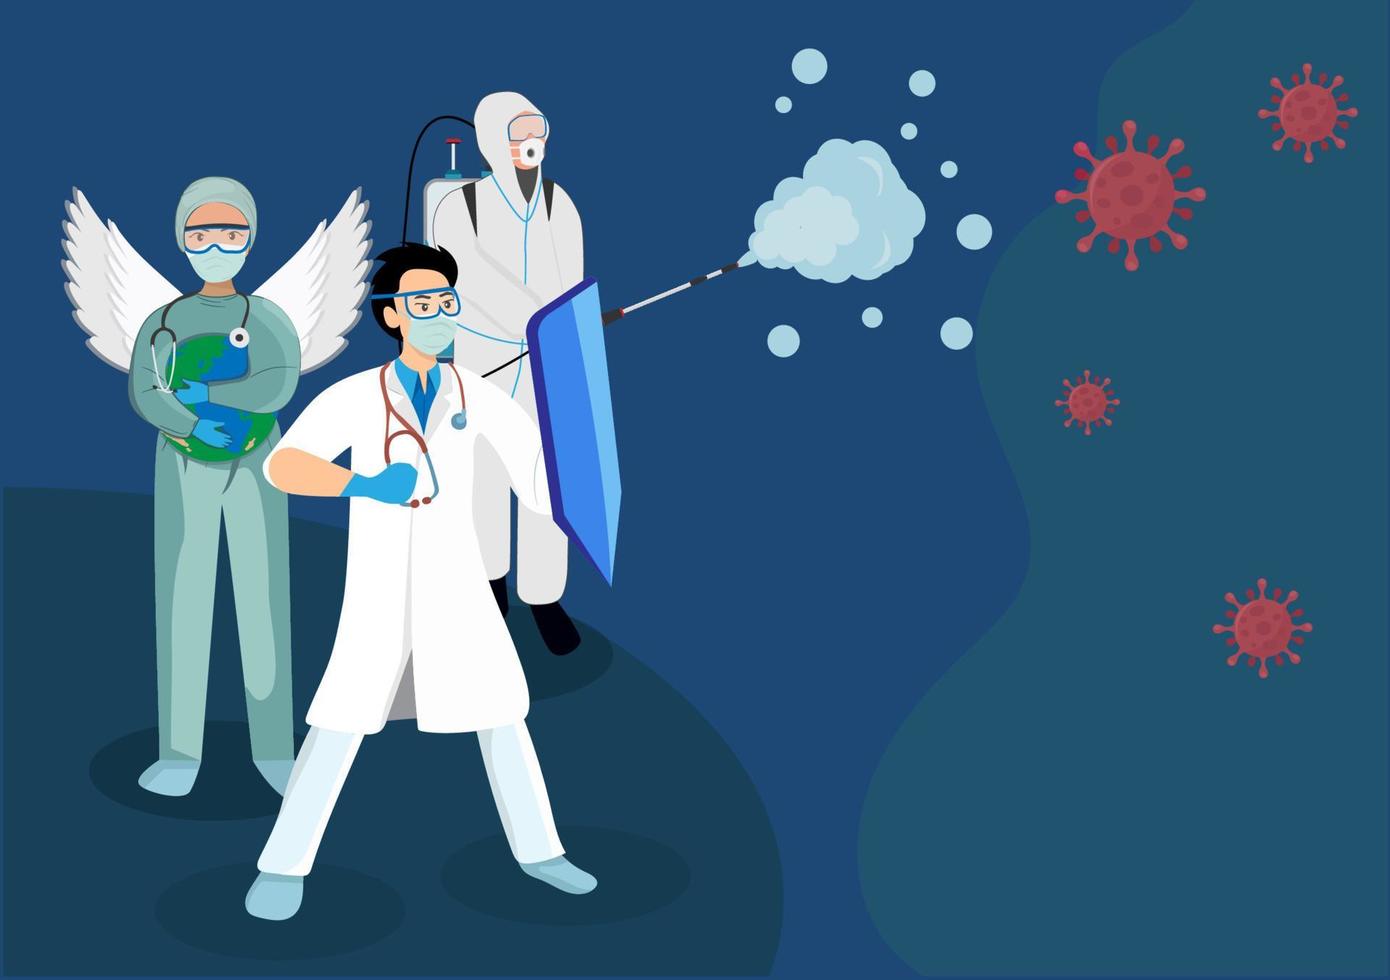 Ärzte, Krankenschwestern und Wissenschaftler, die gegen das weltweite Coronavirus 2019 kämpfen. Cartoon-Illustrationsvektor im flachen Stil vektor